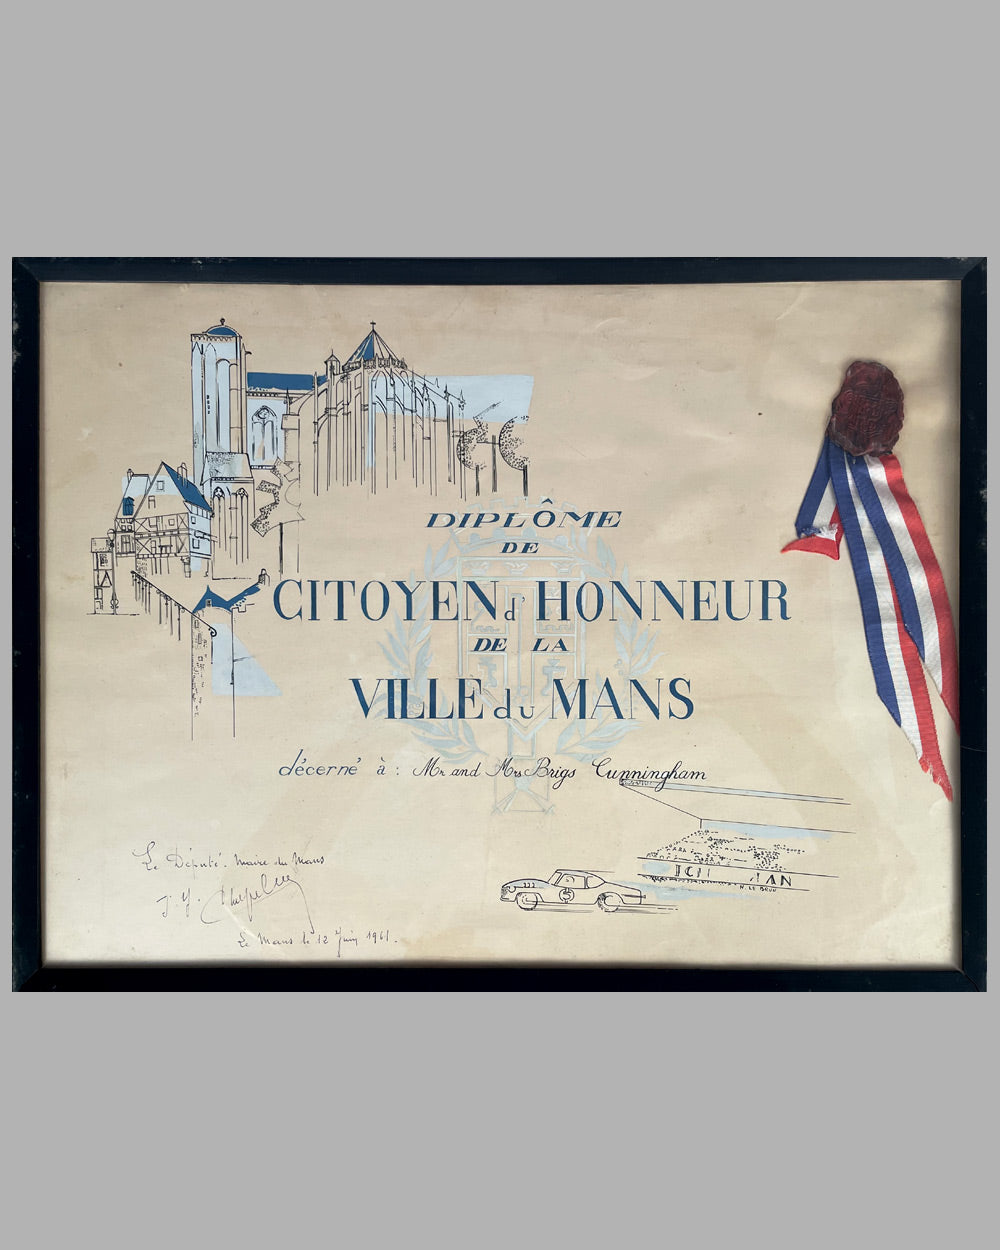 Diplome de Citoyen d’ Honneur de la Ville du Mans presented to Mr. & Mrs. Briggs Cunningham